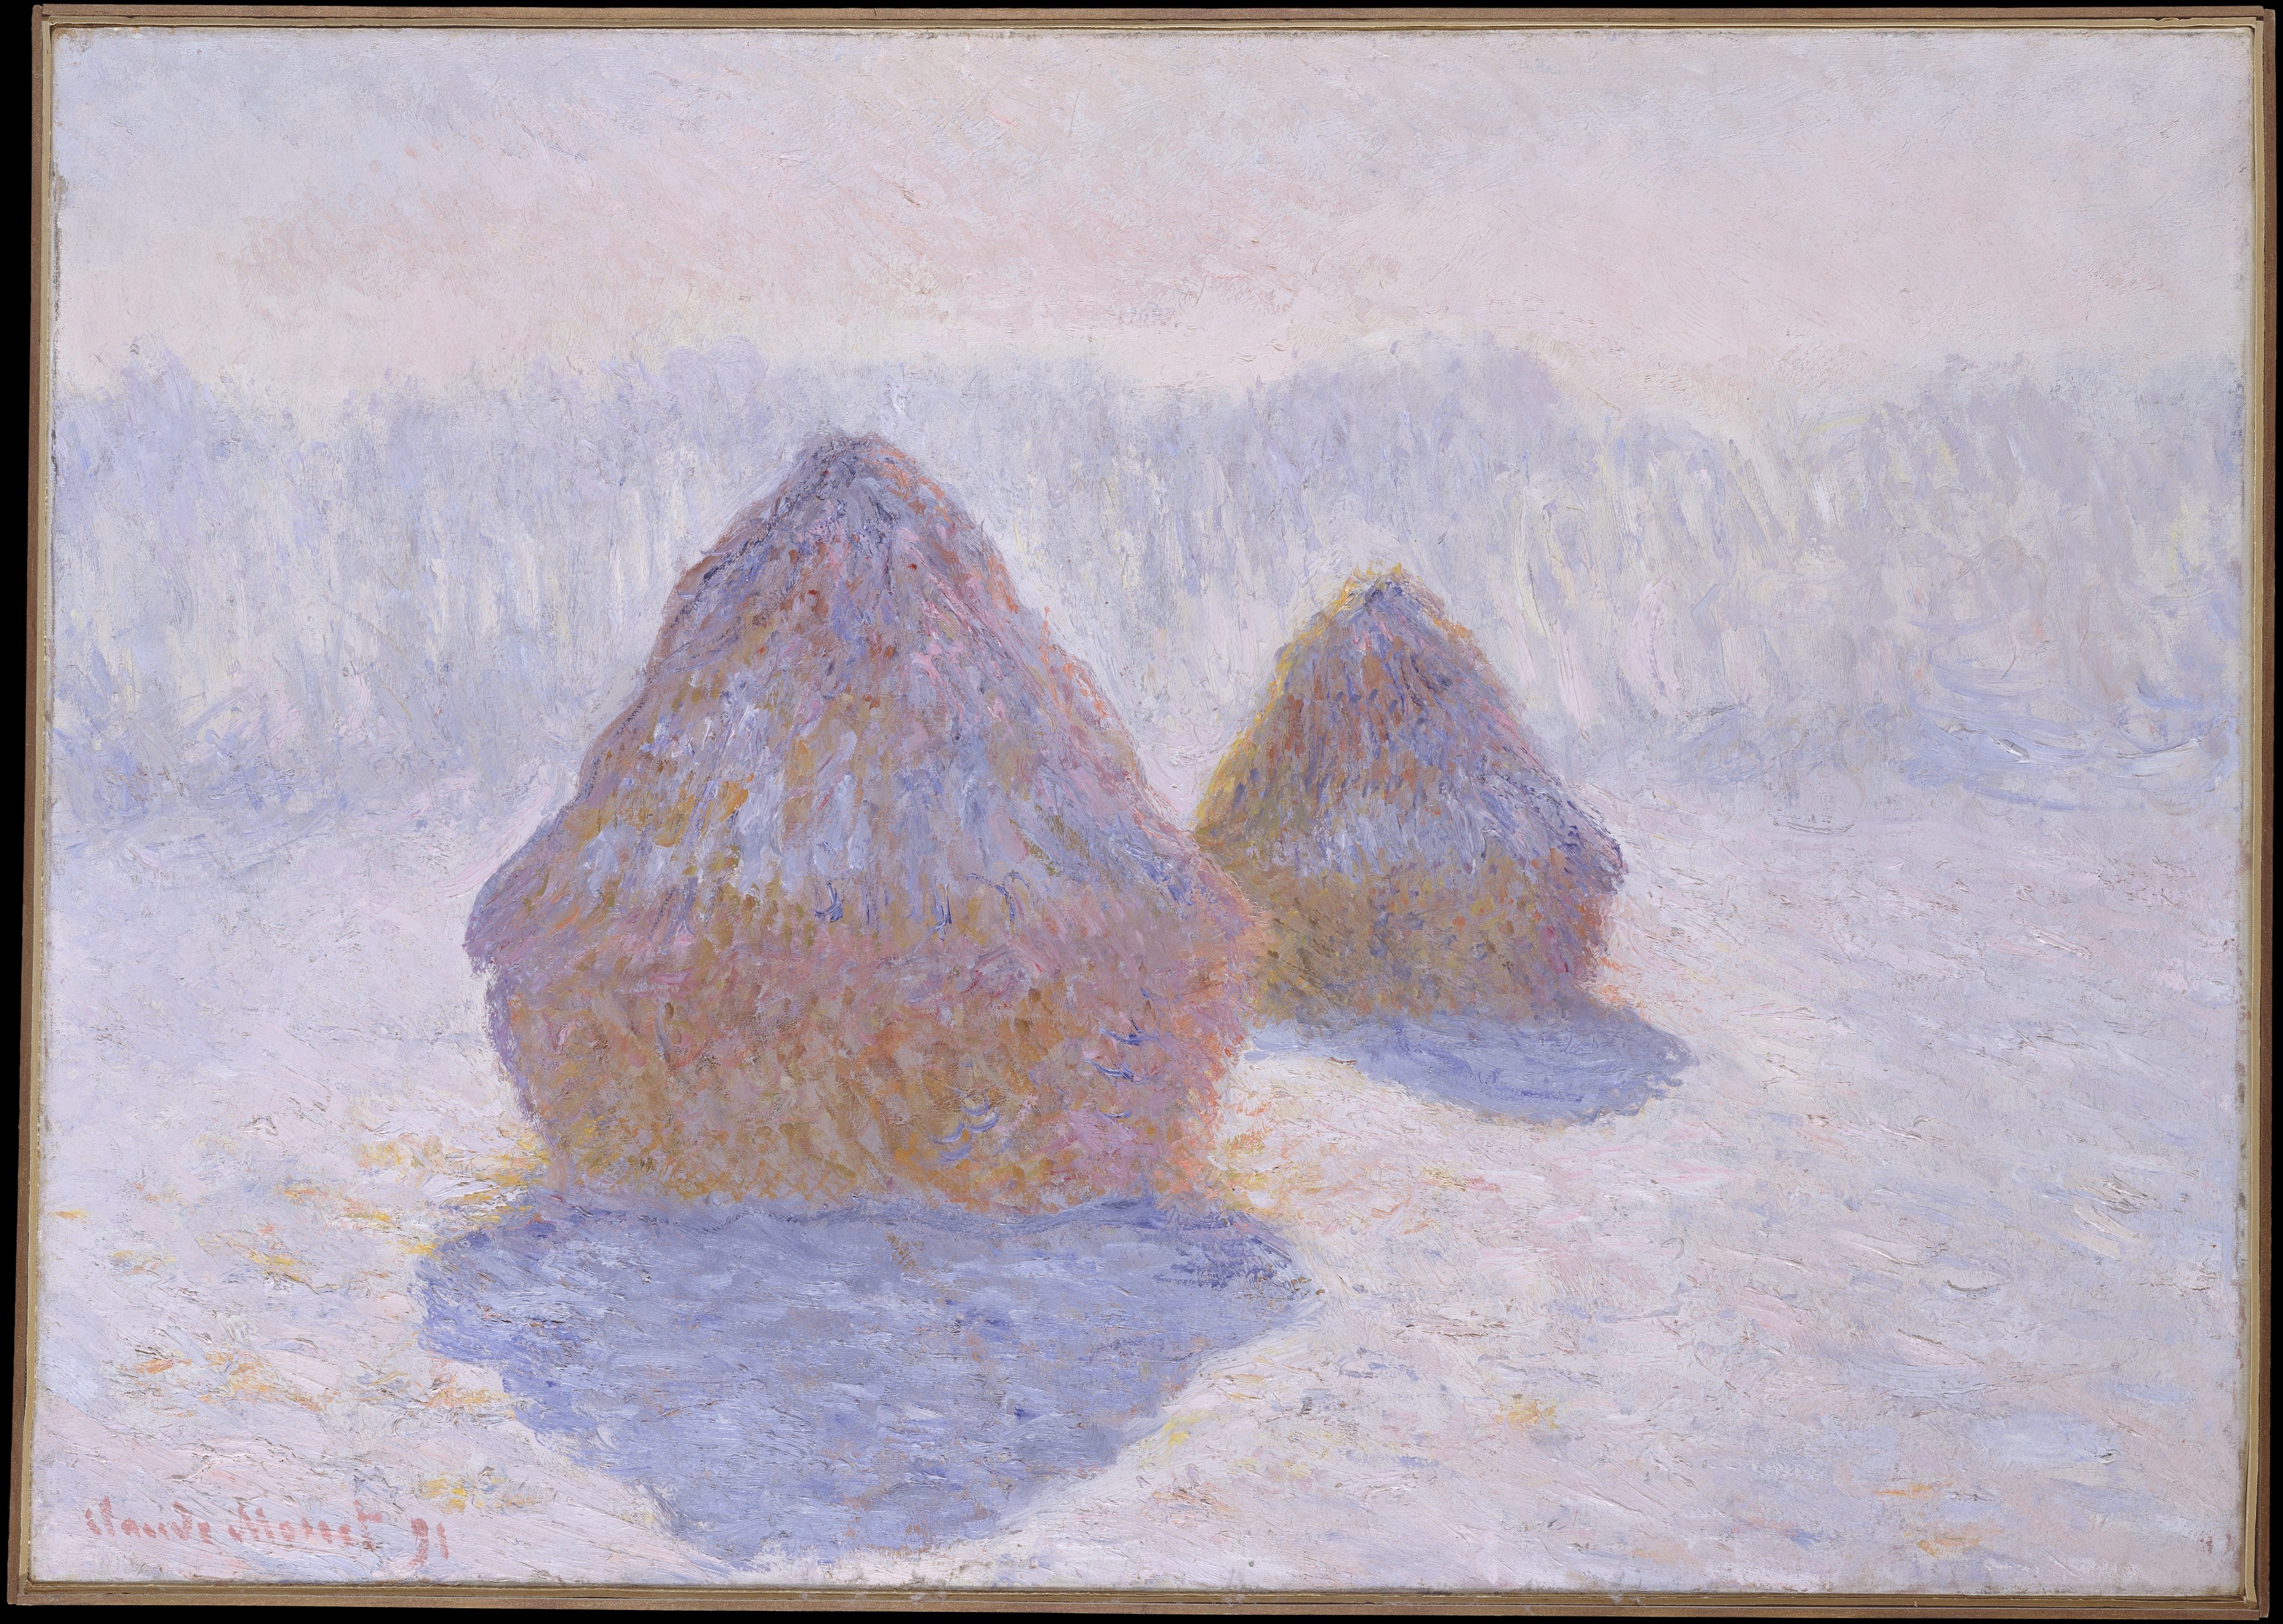 أكوام القش (تأثير الثلج والشمس) by Claude Monet - 1891 - 65.4 x 92.1 cm 